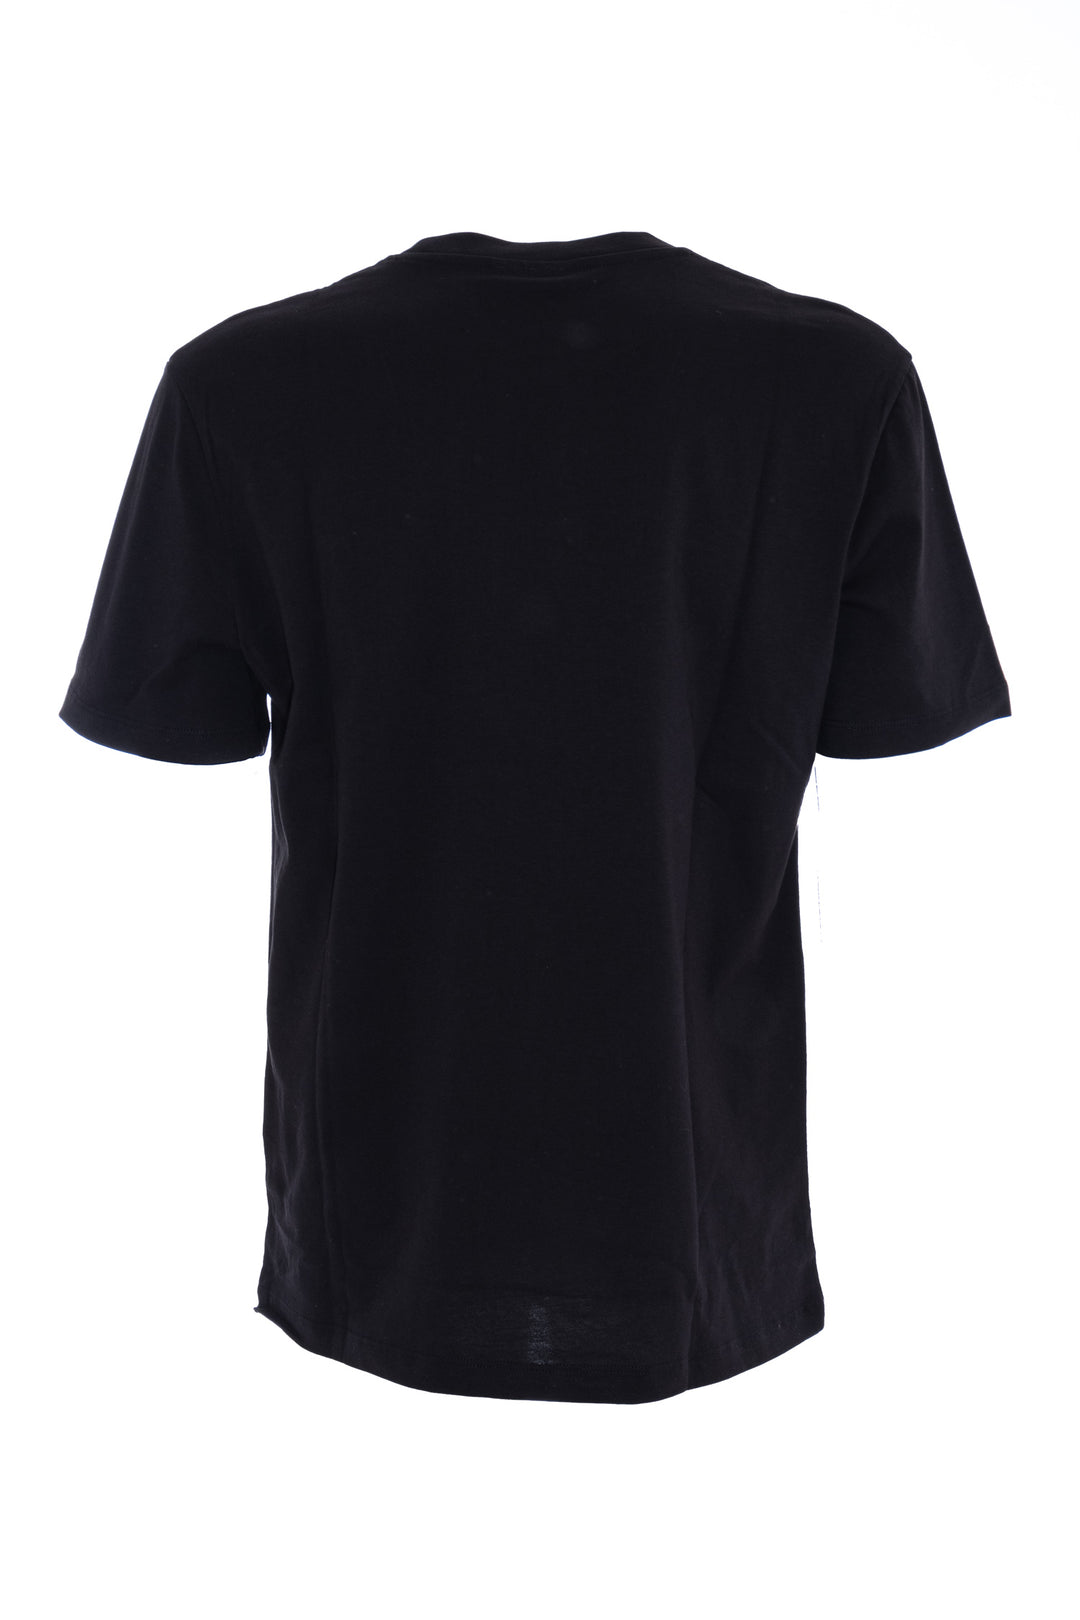 GAELLE T-shirt nera in cotone con logo - Mancinelli 1954